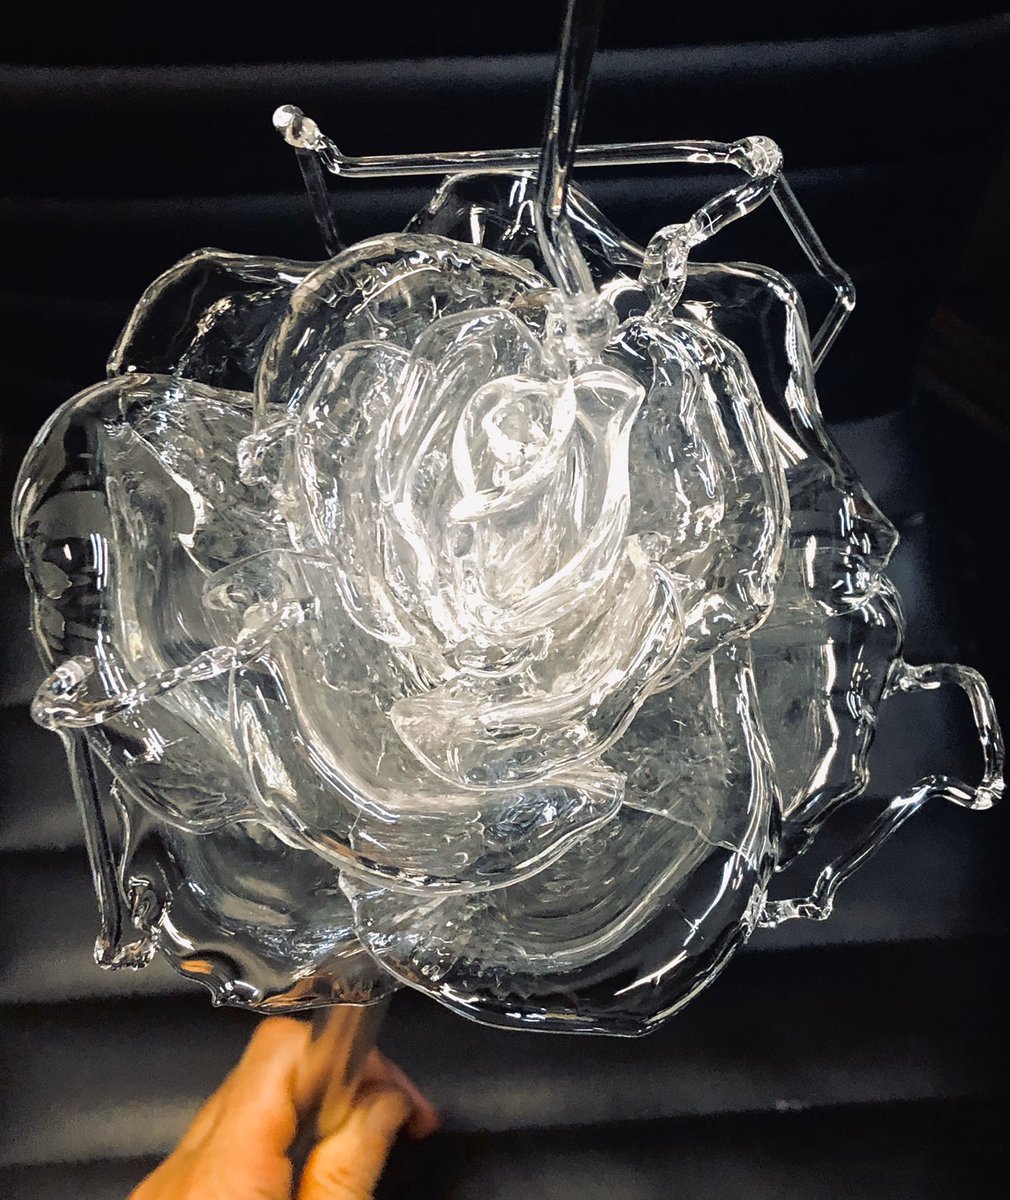 Utsusemi Glass Sculpture 薔薇をリニューアルするよ 丸い姿にするため5枚追加して 結構なボリュームになったけれど どの角度から見ても薔薇らしく 後は花弁の細部を仕上げてガクと茎を繋げる バラの花 Rose Flower ランプワーク